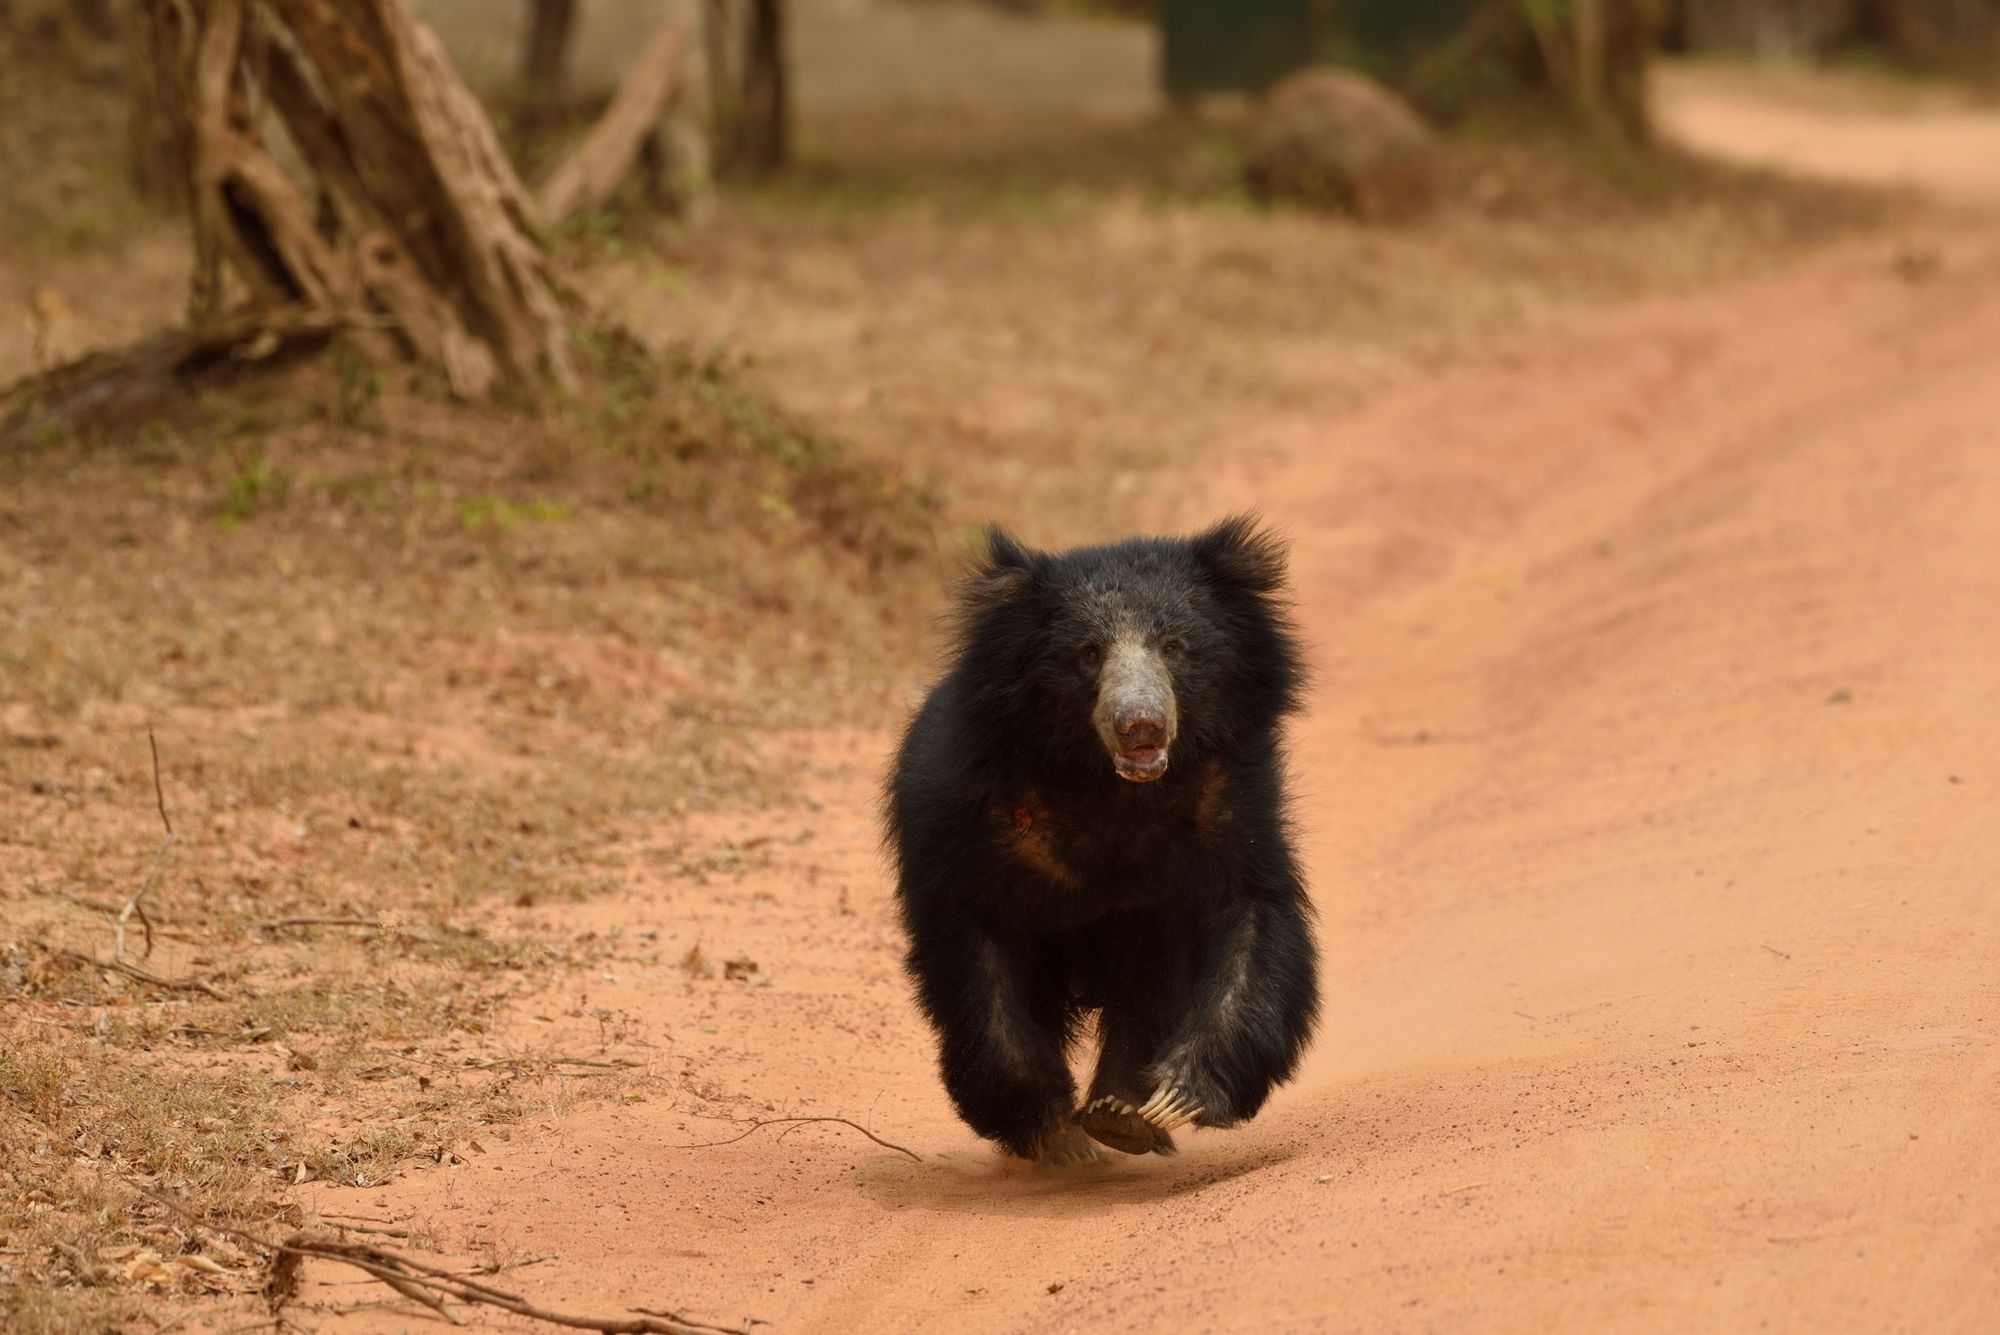 A bear cub at Yala National Park, Sri Lanka